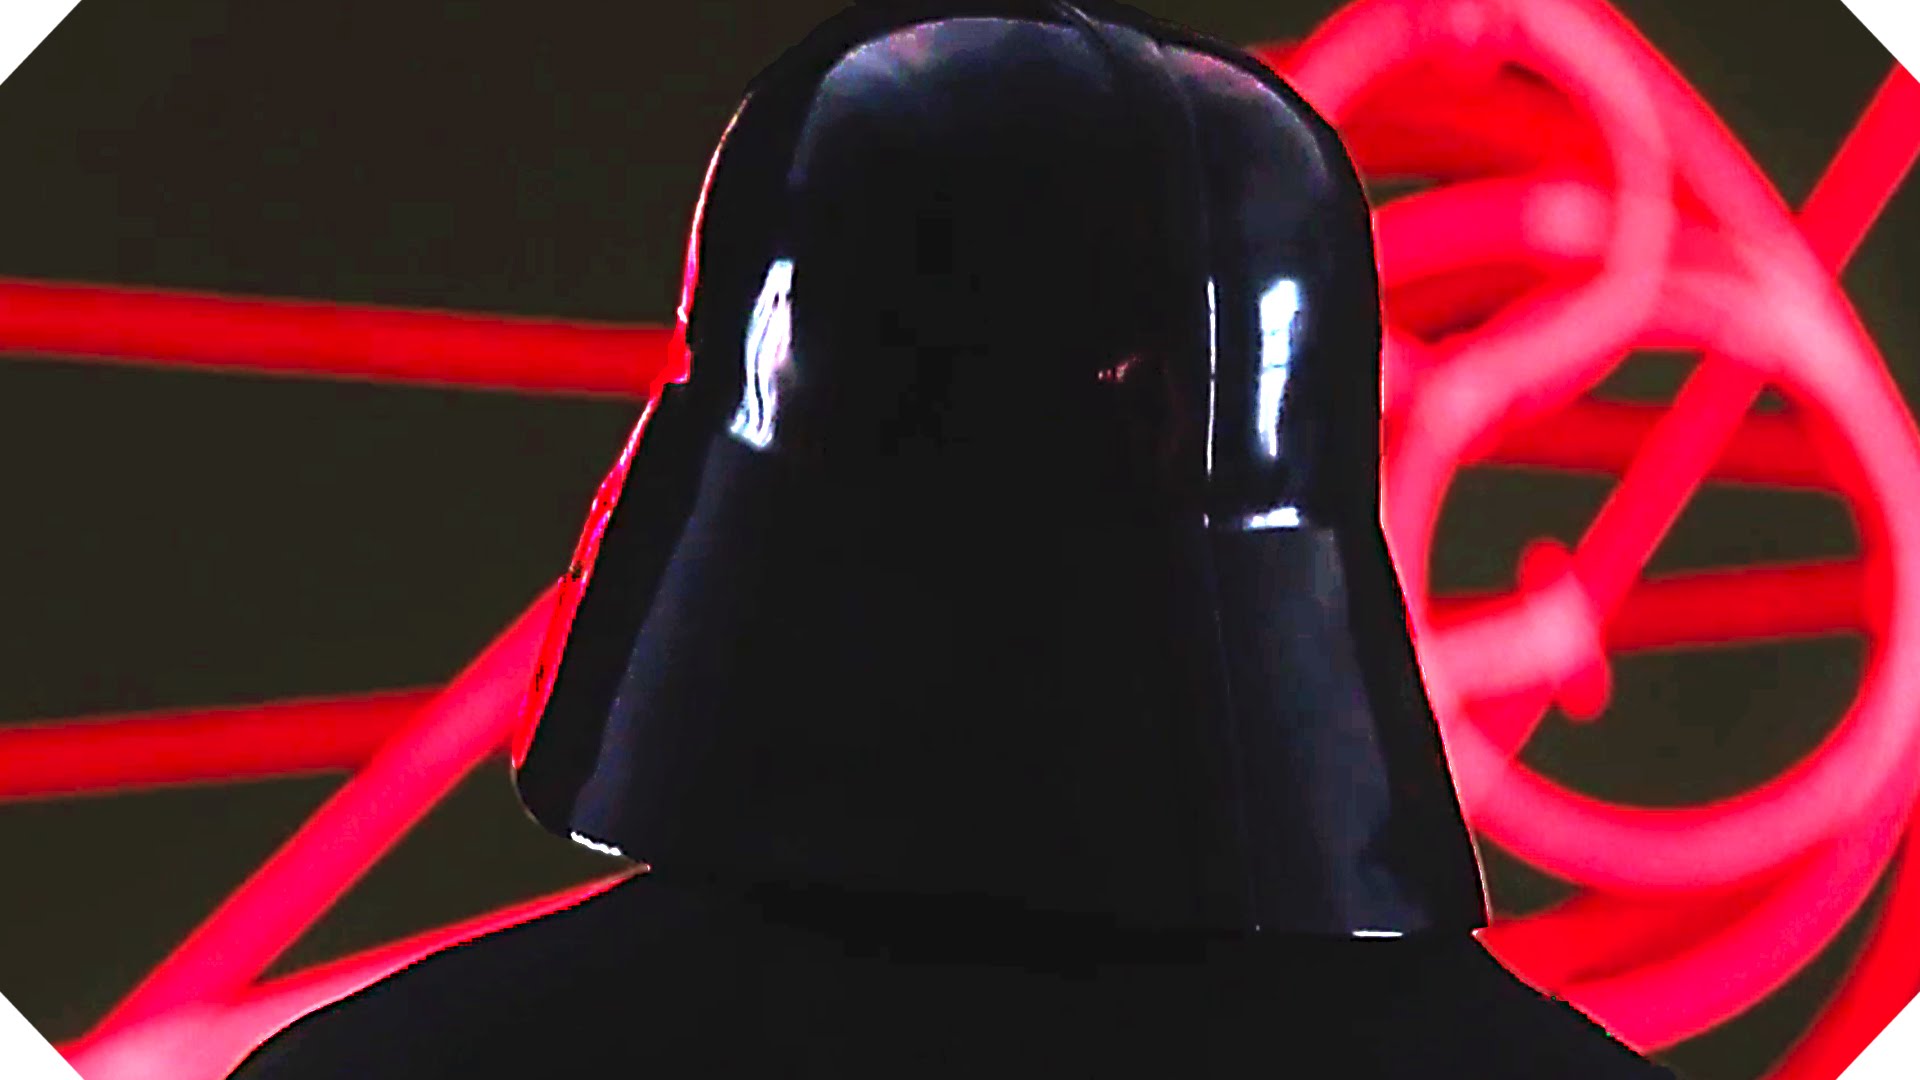 Pojawi się za to Darth Vader. Głosu użyczy mu James Earl Jones.